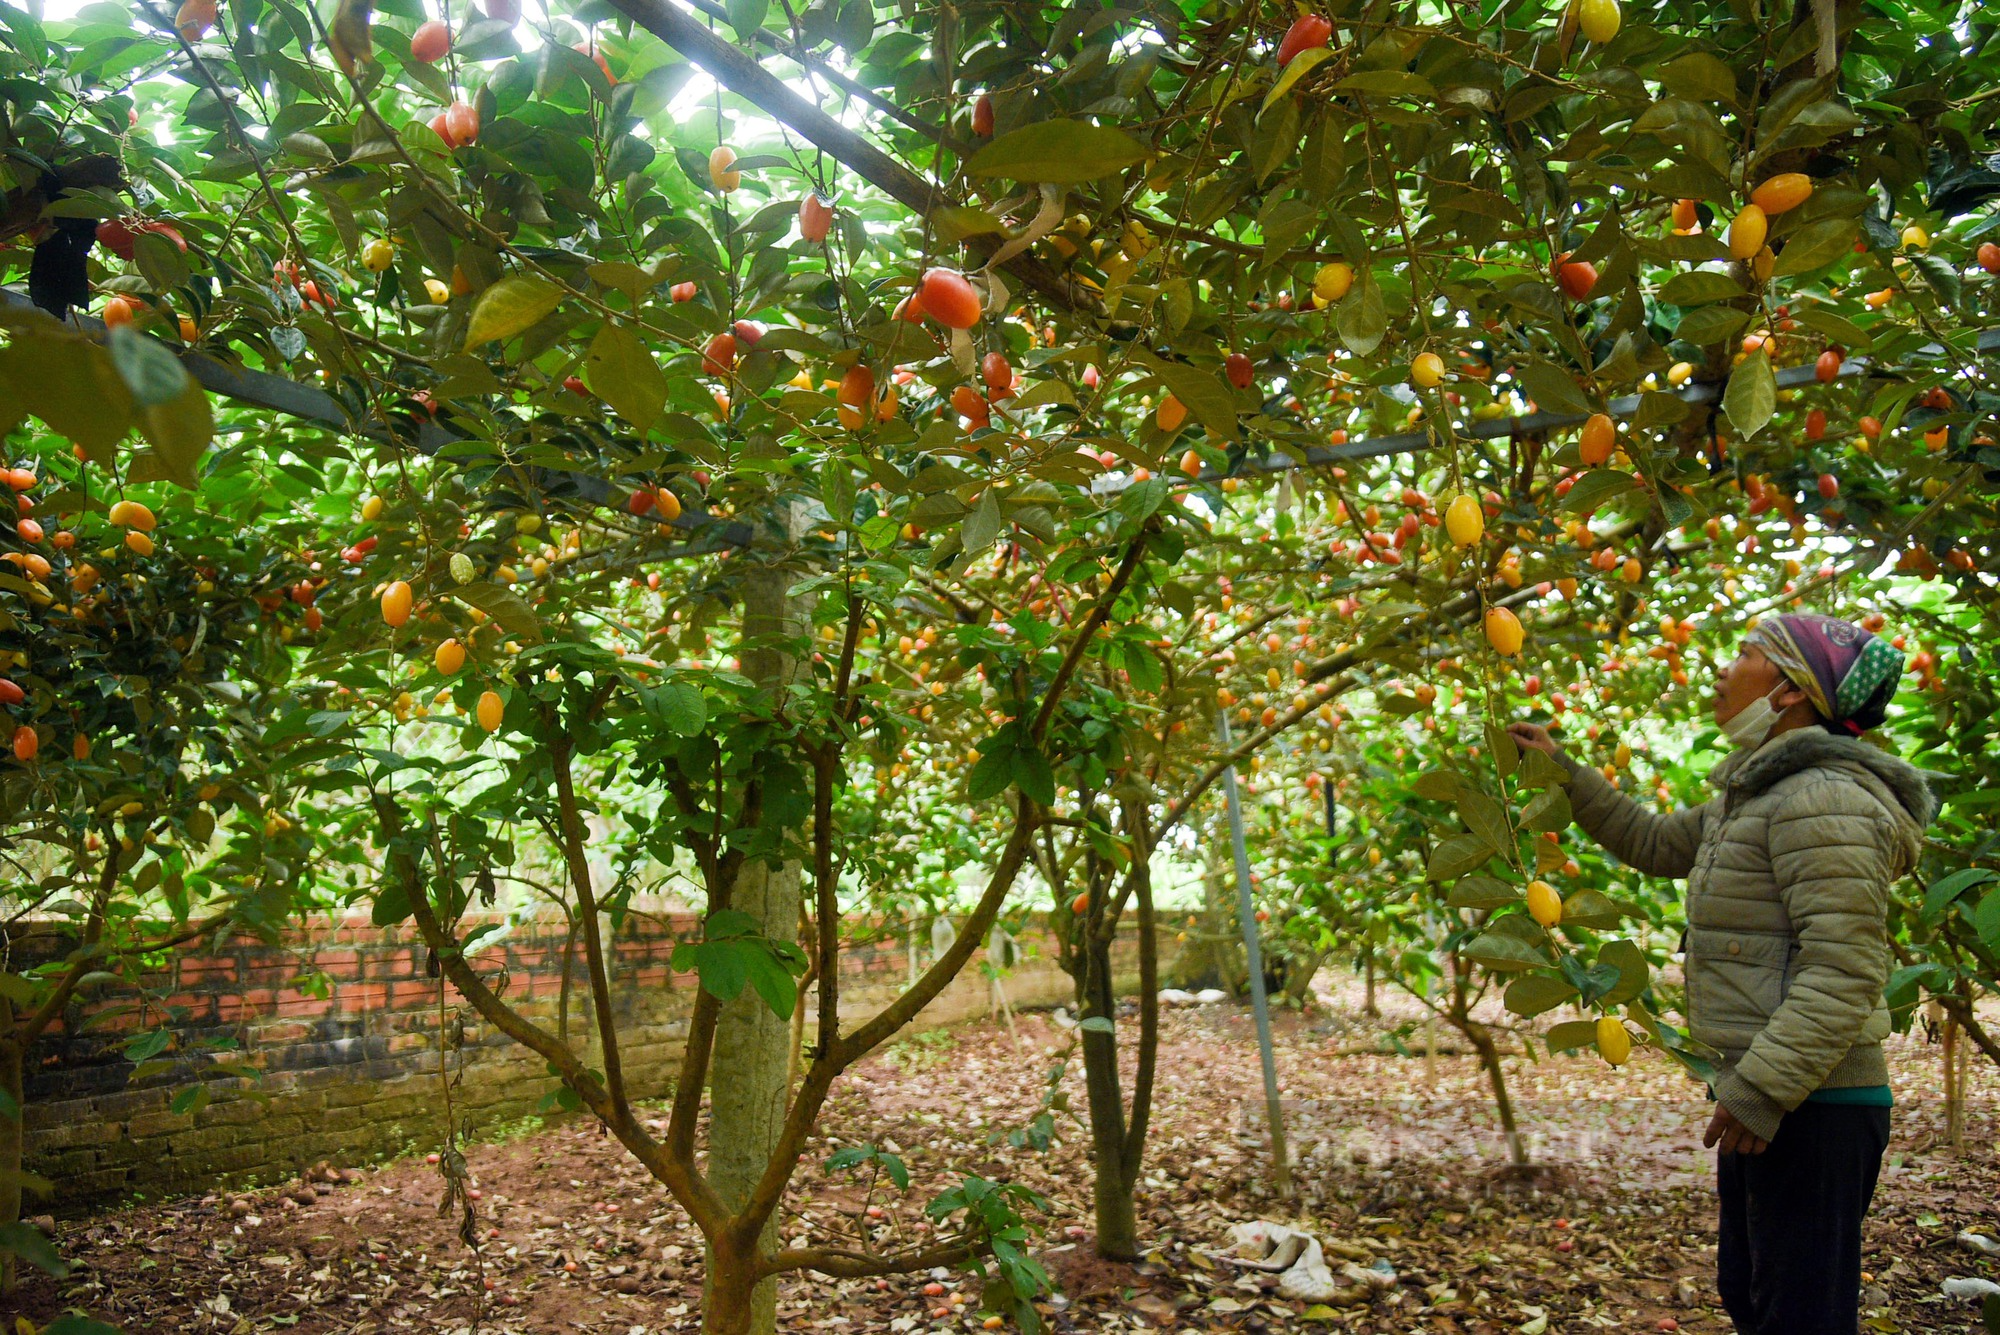 Loại quả chua chua, ngọt ngọt đang được nông dân thu hái ở ven đô Hà Nội - Ảnh 1.